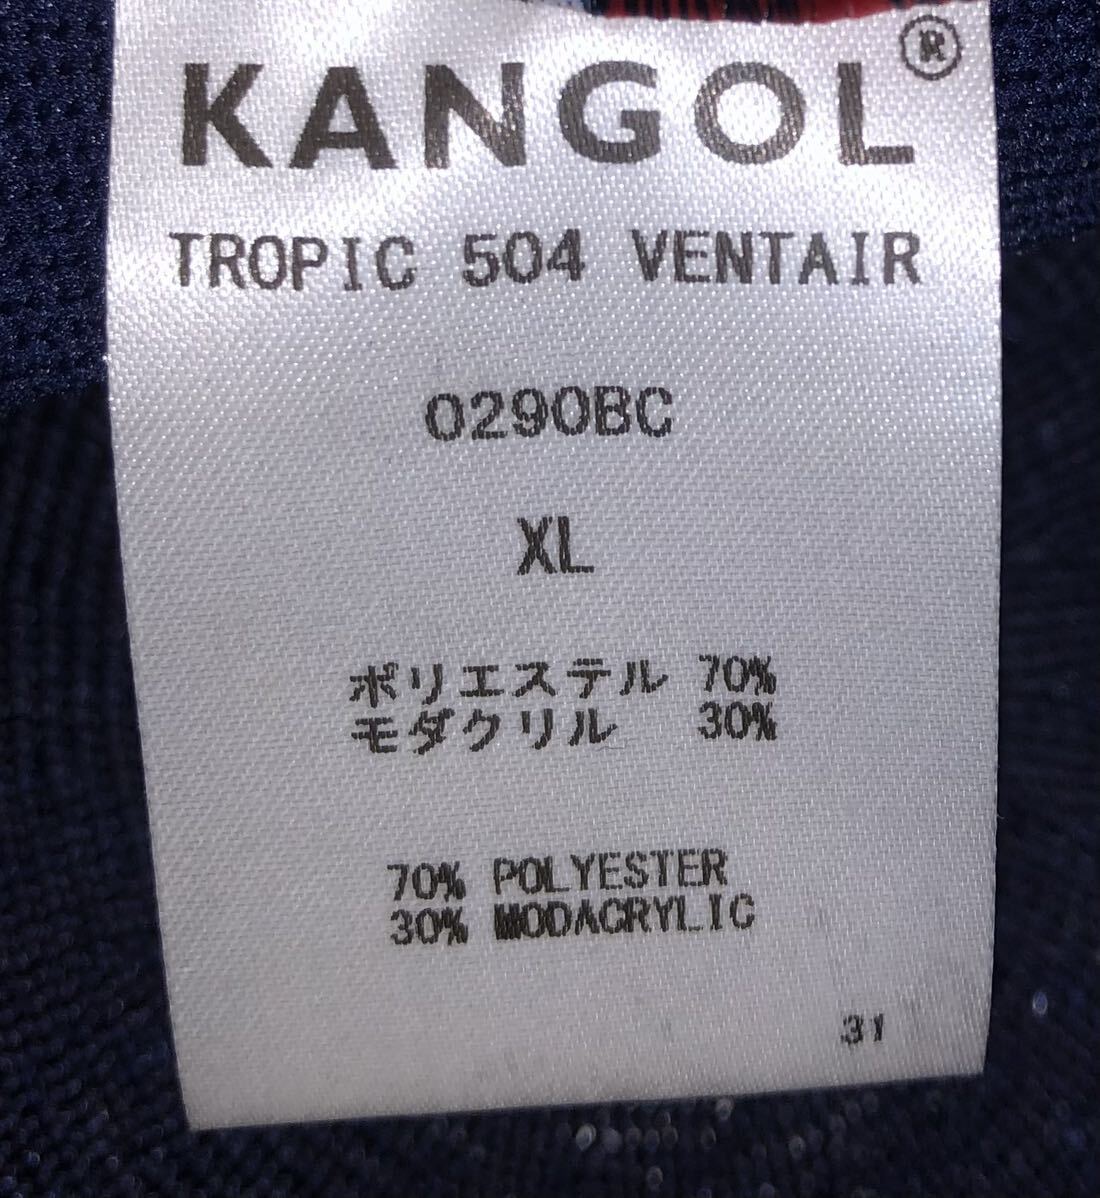 美品 KANGOL Tropic 504 Ventair 0290BC XL カンゴール トロピック ベントエアー ハンチングキャップ ベレー帽 ネイビー 紺 ＸＬ 男女兼用の画像6